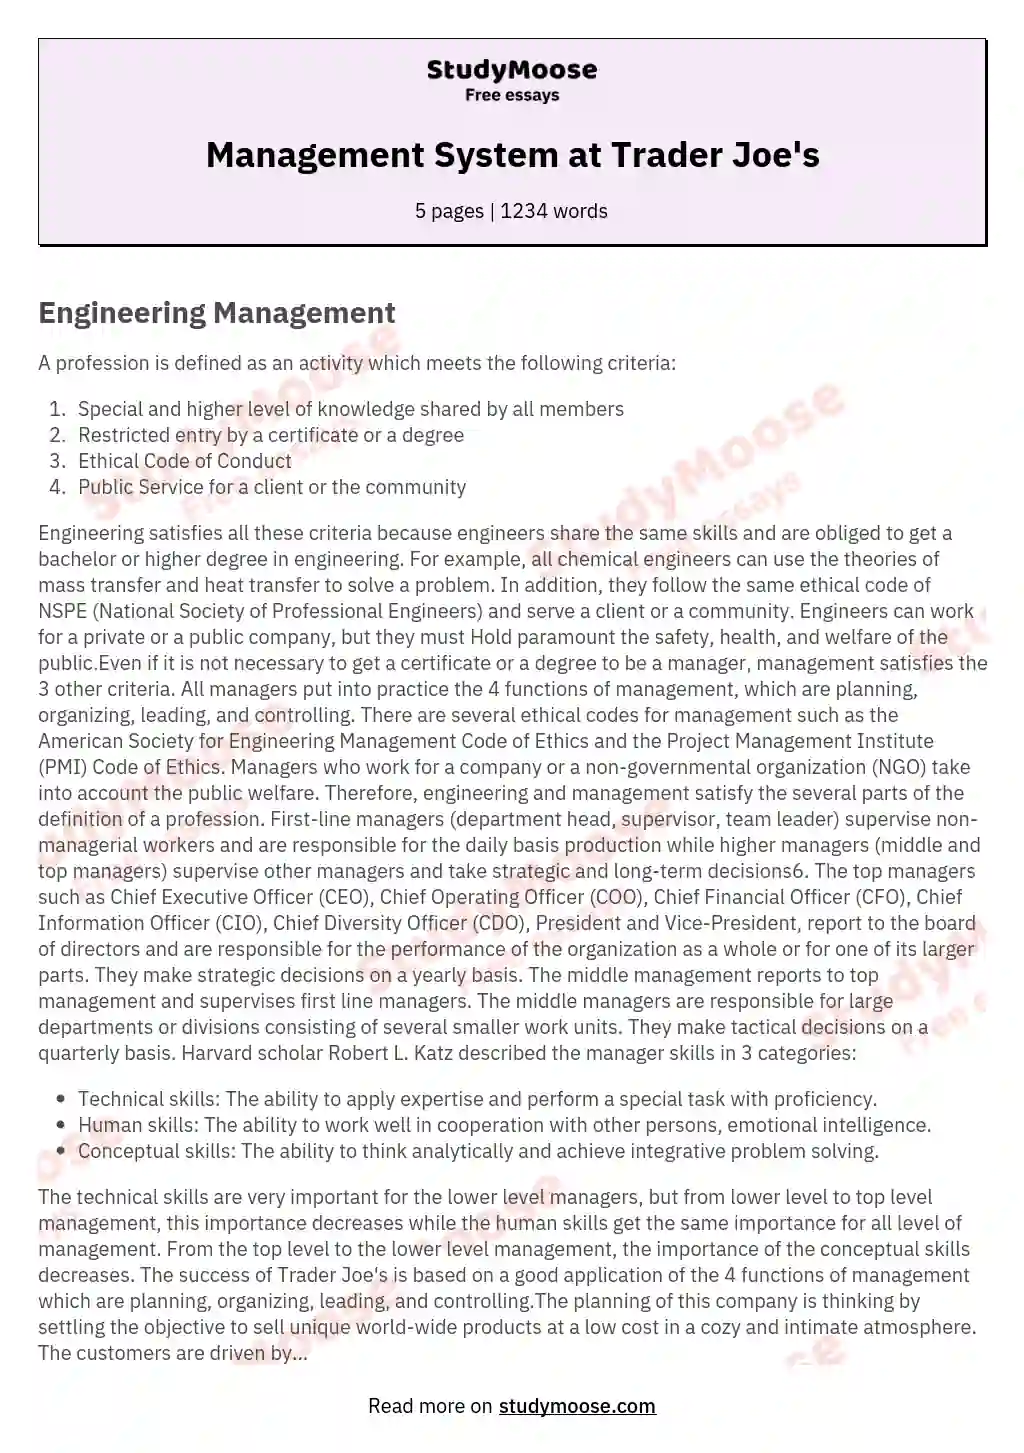 Management System at Trader Joe's essay